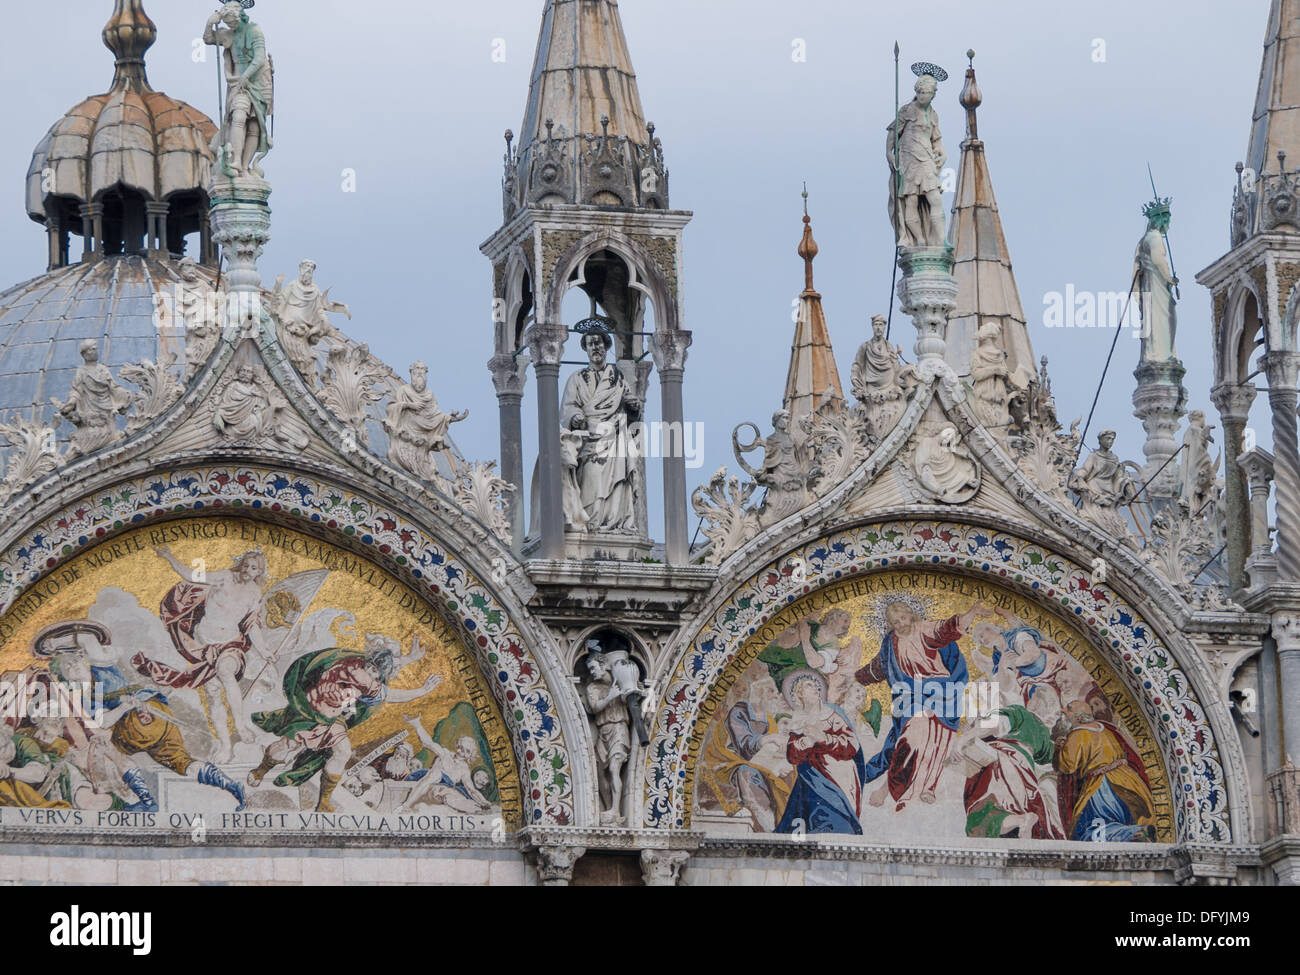 Los mosaicos de la fachada de la catedral de Venecia - Basilica di San Marco - que representan escenas de la biblia Foto de stock